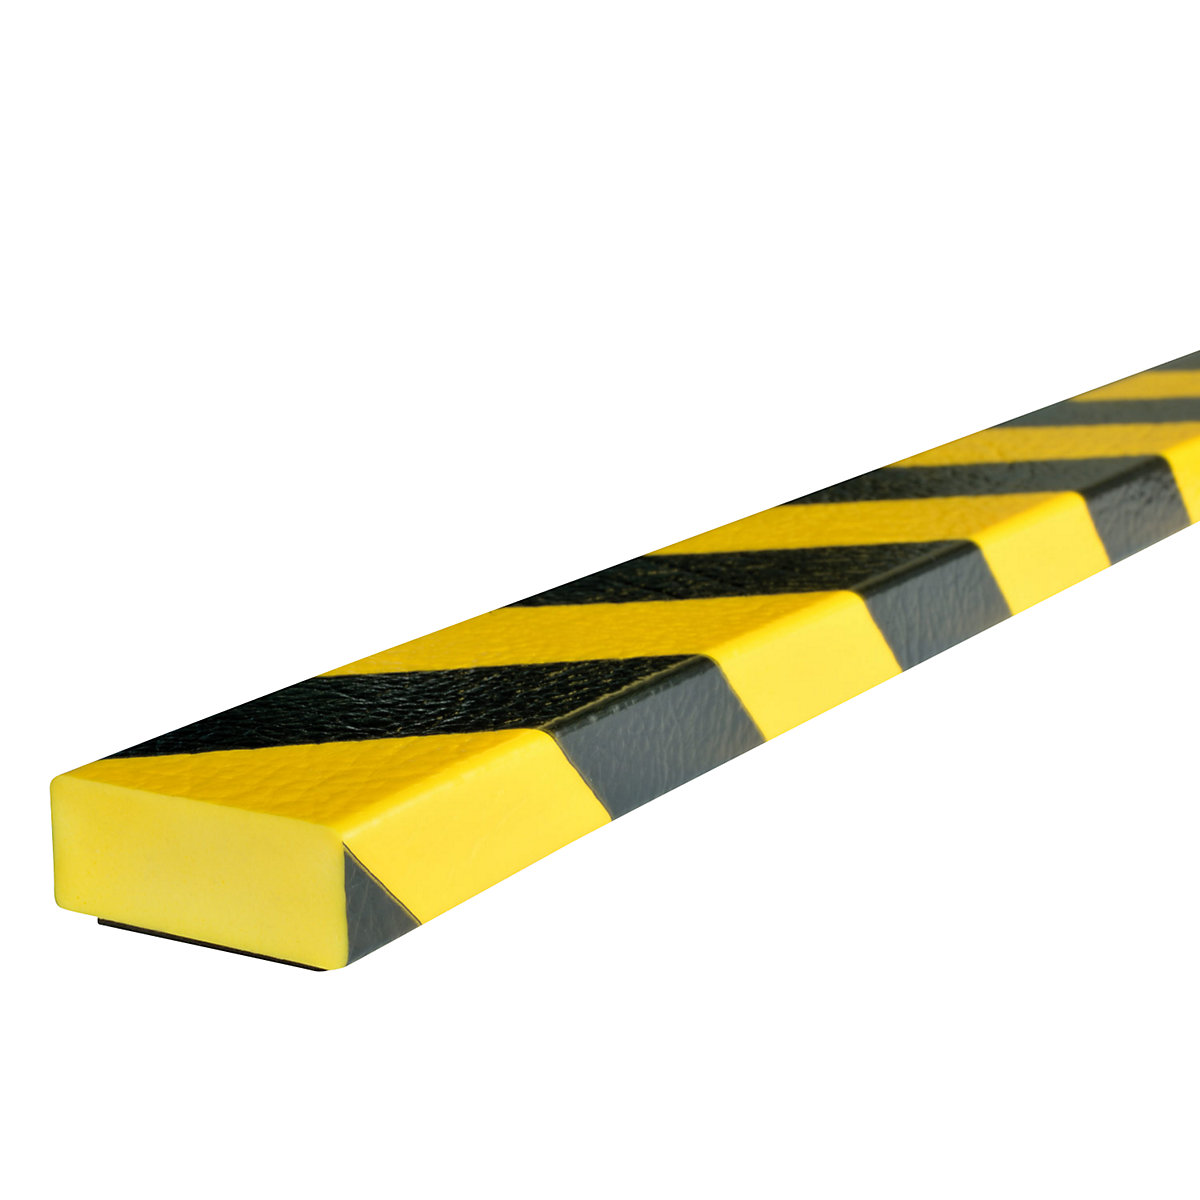 Protección de superficies Knuffi® – SHG, tipo D, pieza de 1 m, imán, amarillo y negro-23